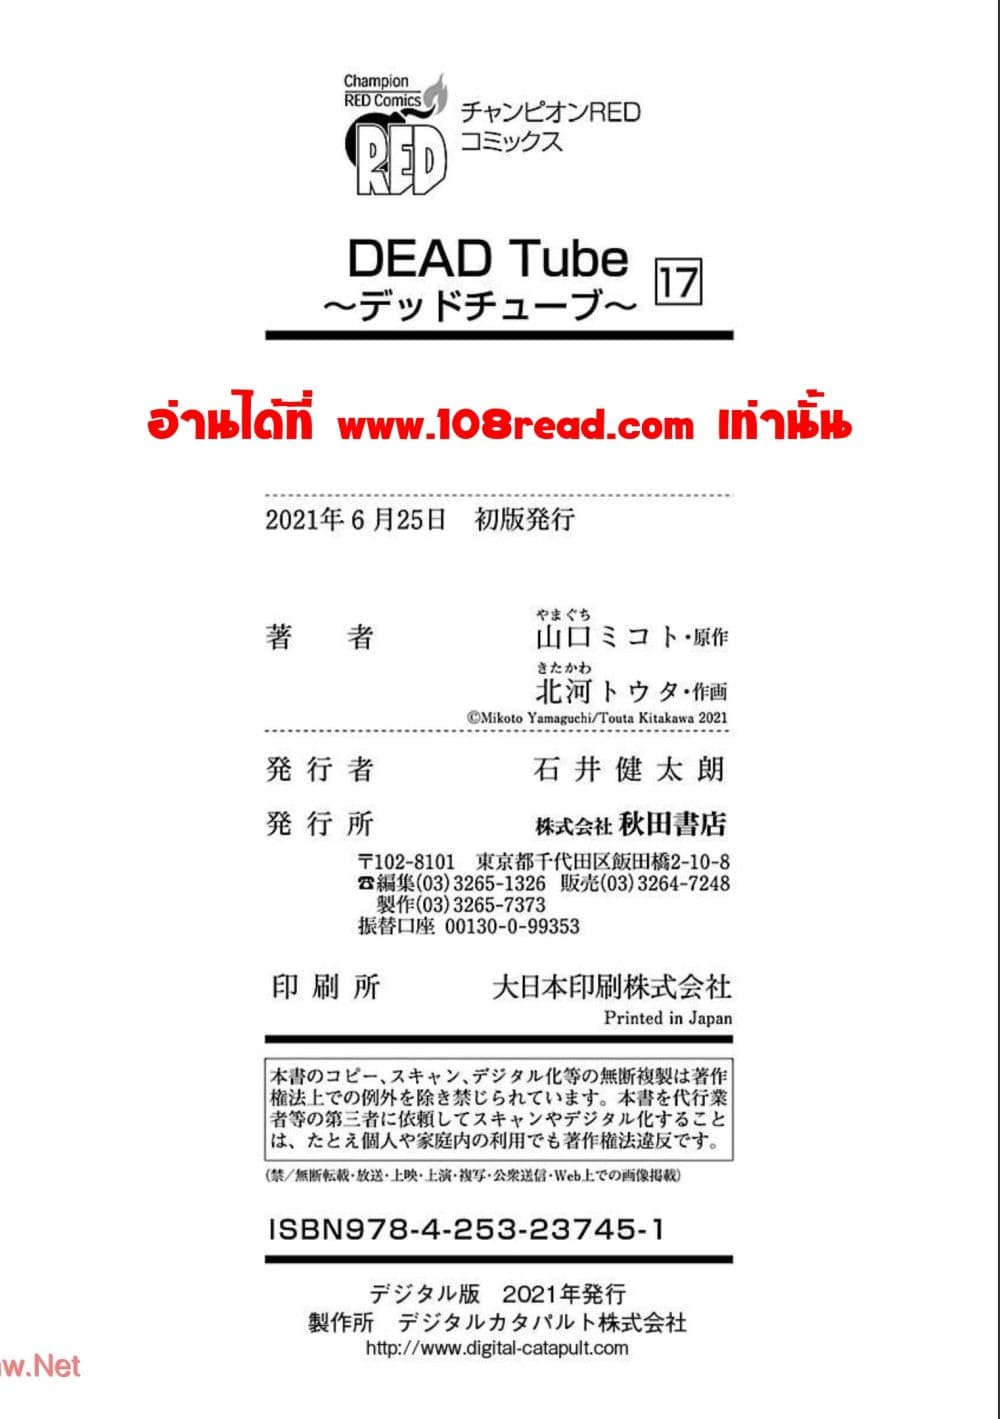 Dead Tube 70 39